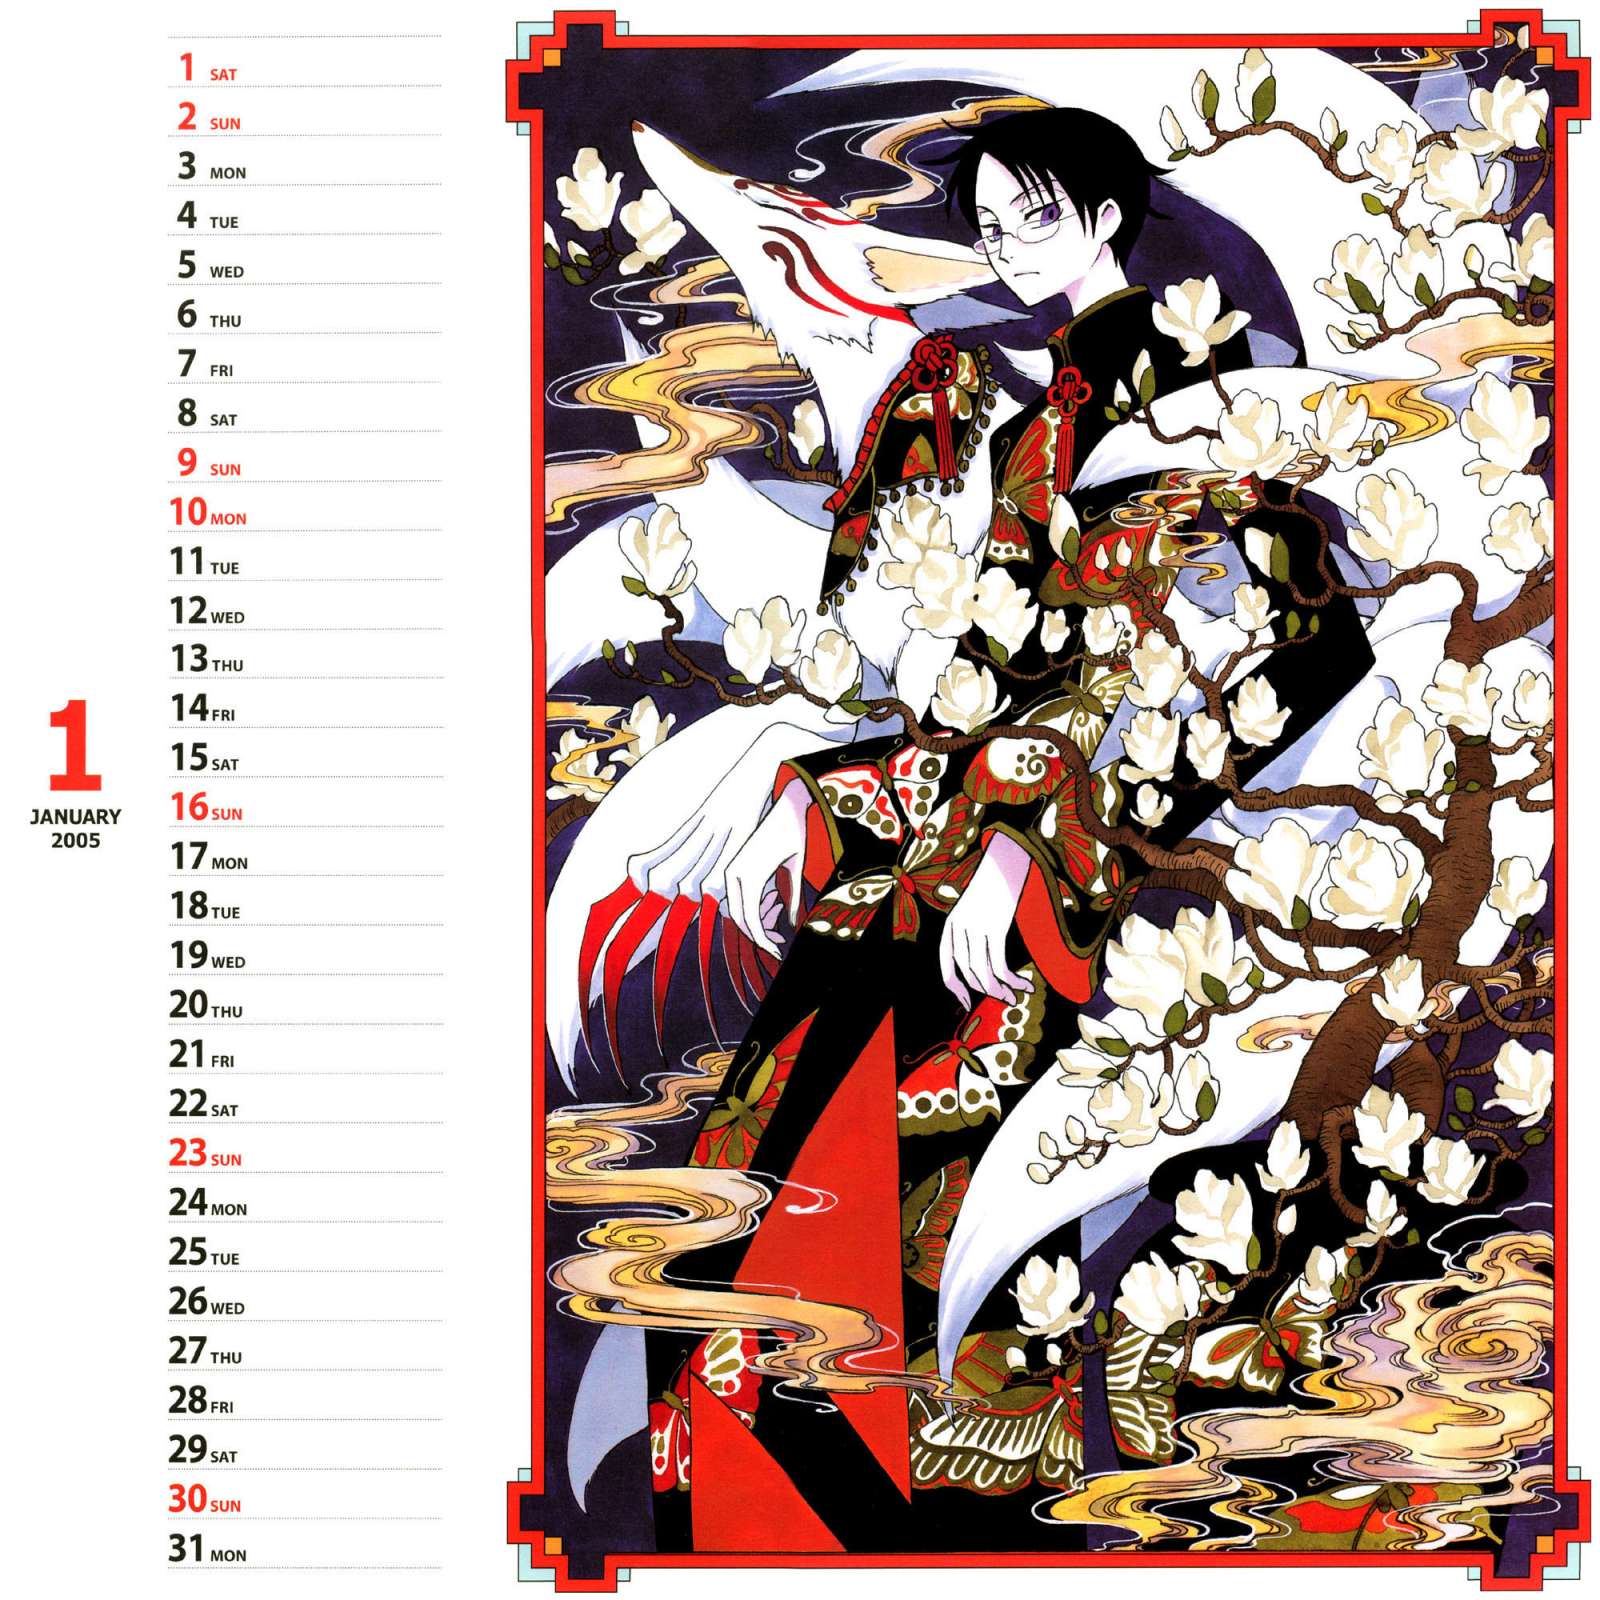 Calendario de CLAMP 2006 - Tsubasa Reservoir Chronicle - XXX Holic 2005 en Mxima Calidad